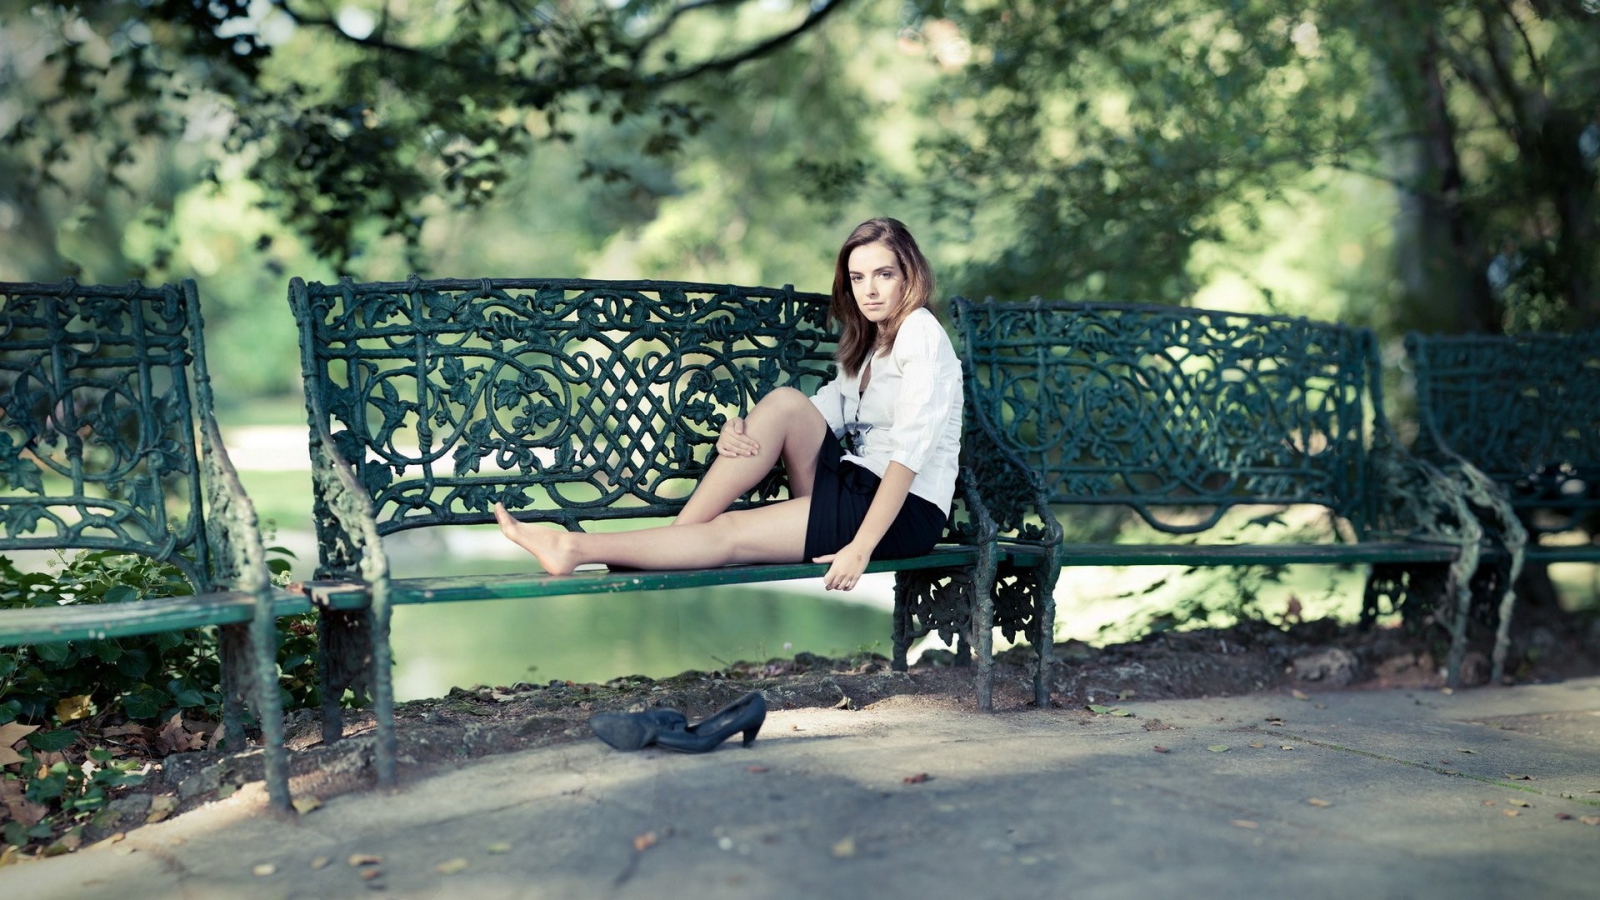 Девушка сидит на кованной парковой скамье